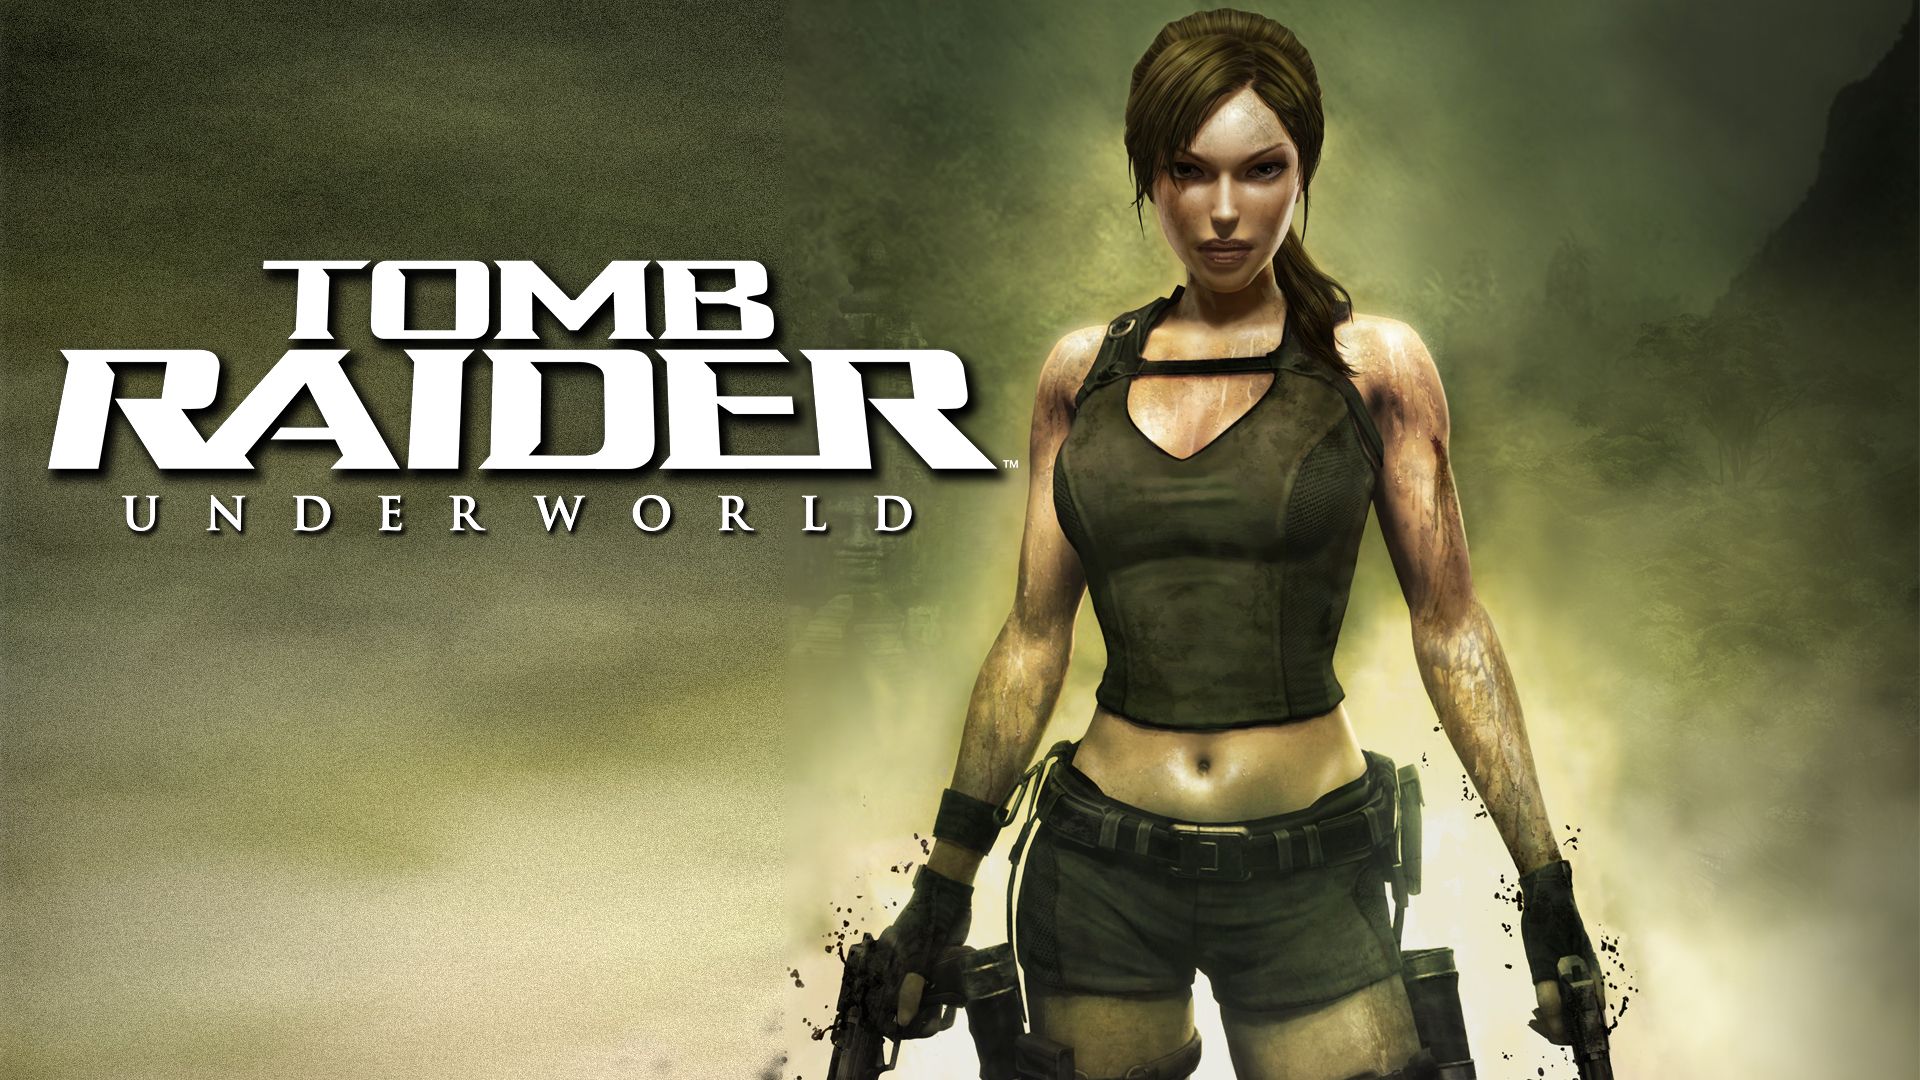 Прохождение игры Tomb Raider: Underworld # 11. HD - Full 1080p. (Русская версия игры)